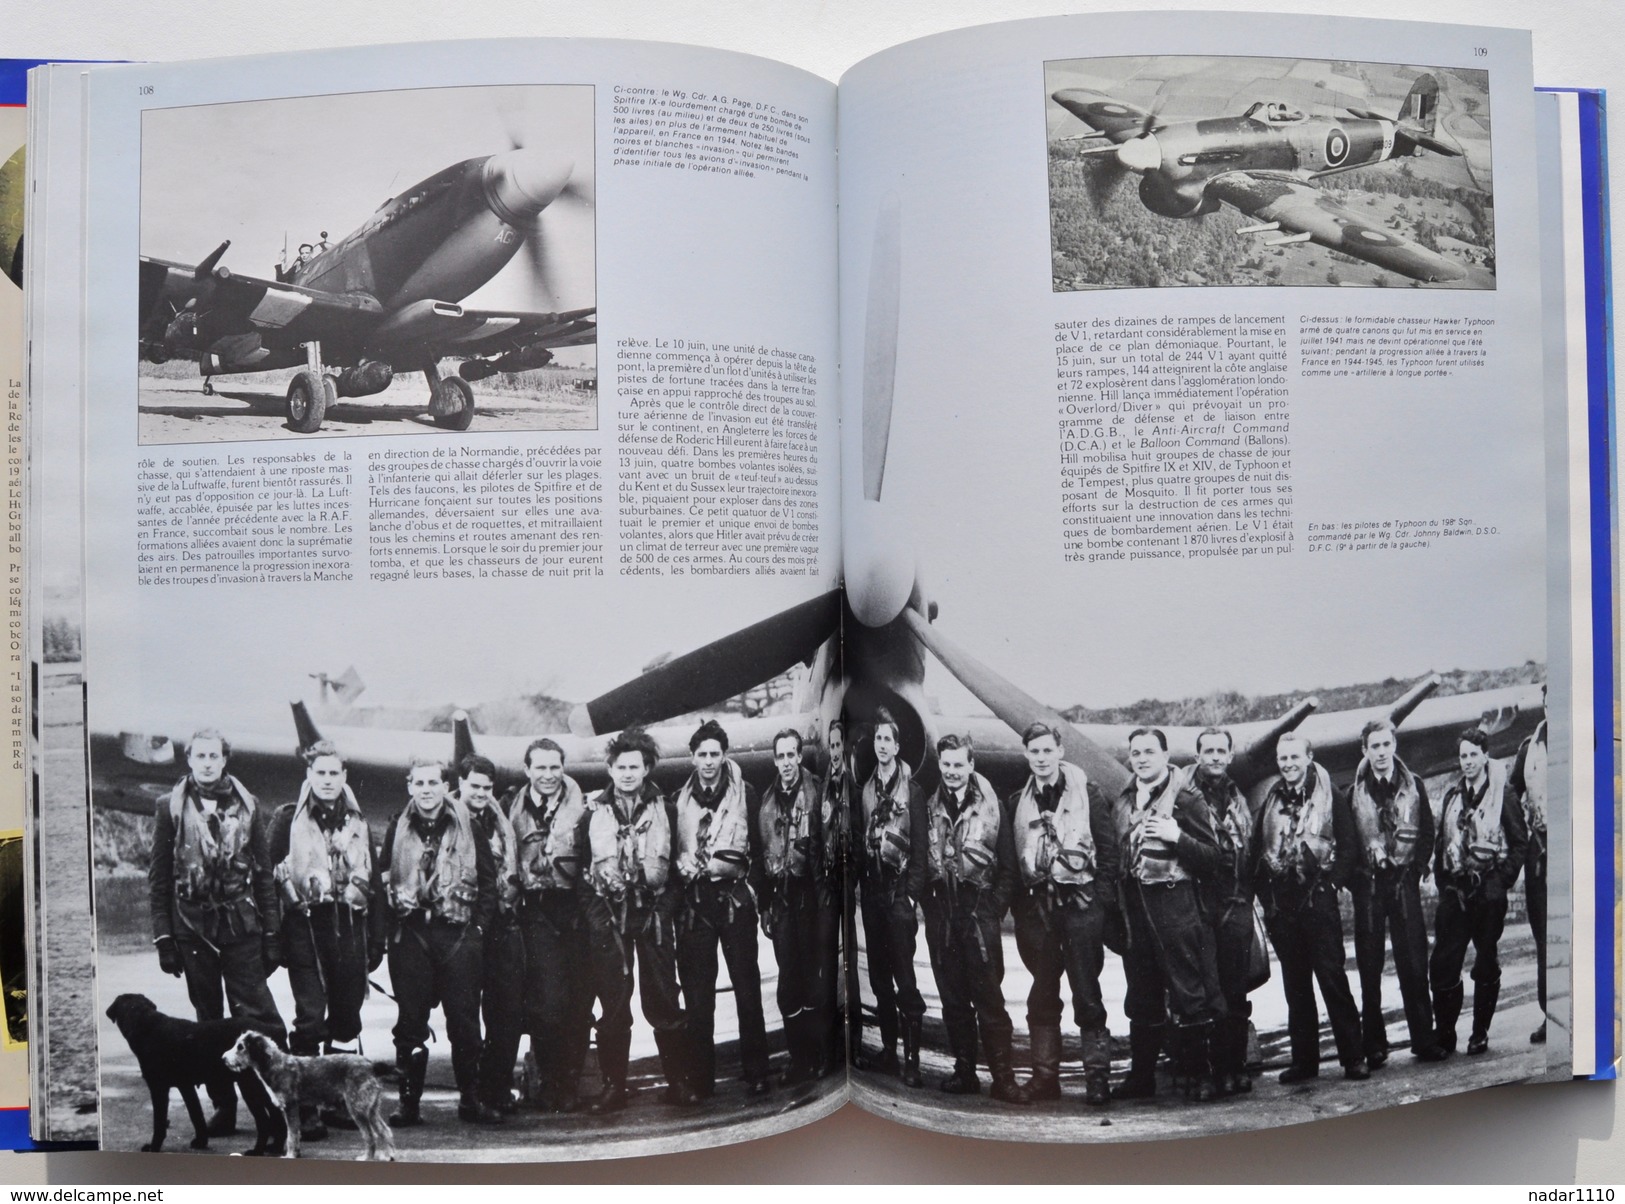 Avion, aviation, Guerre 40-45 / HISTOIRE DE LA R.A.F. - Chaz Bowyer, 1989 / Royal Air Force, Lancaster